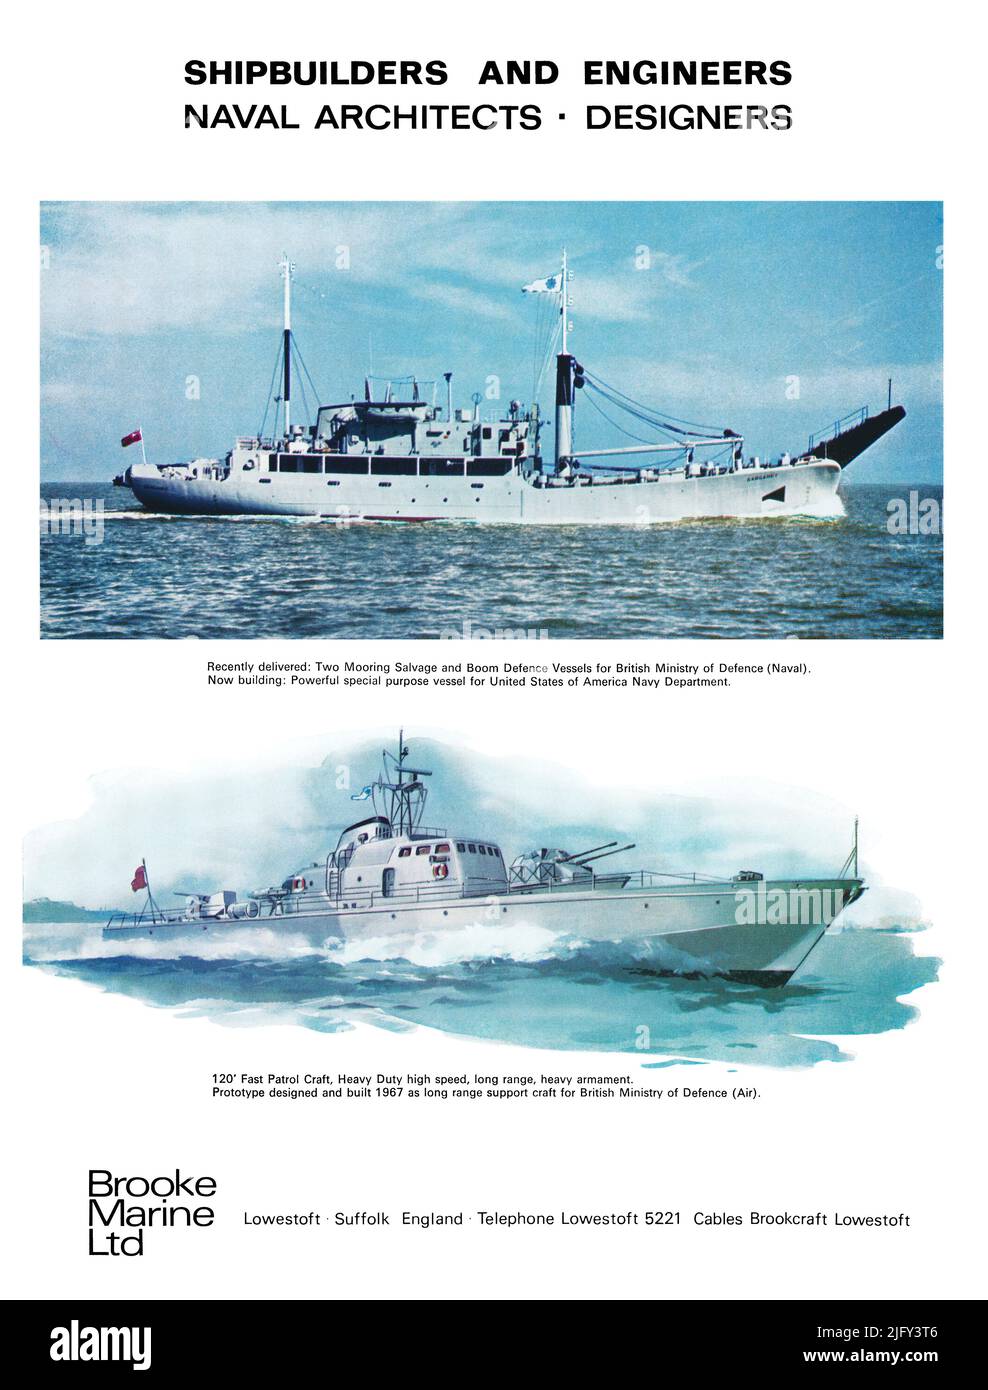 1967 Pubblicità britannica per Brooke Marine Ltd, Lowestoft, costruttori navali e architetti navali. Foto Stock